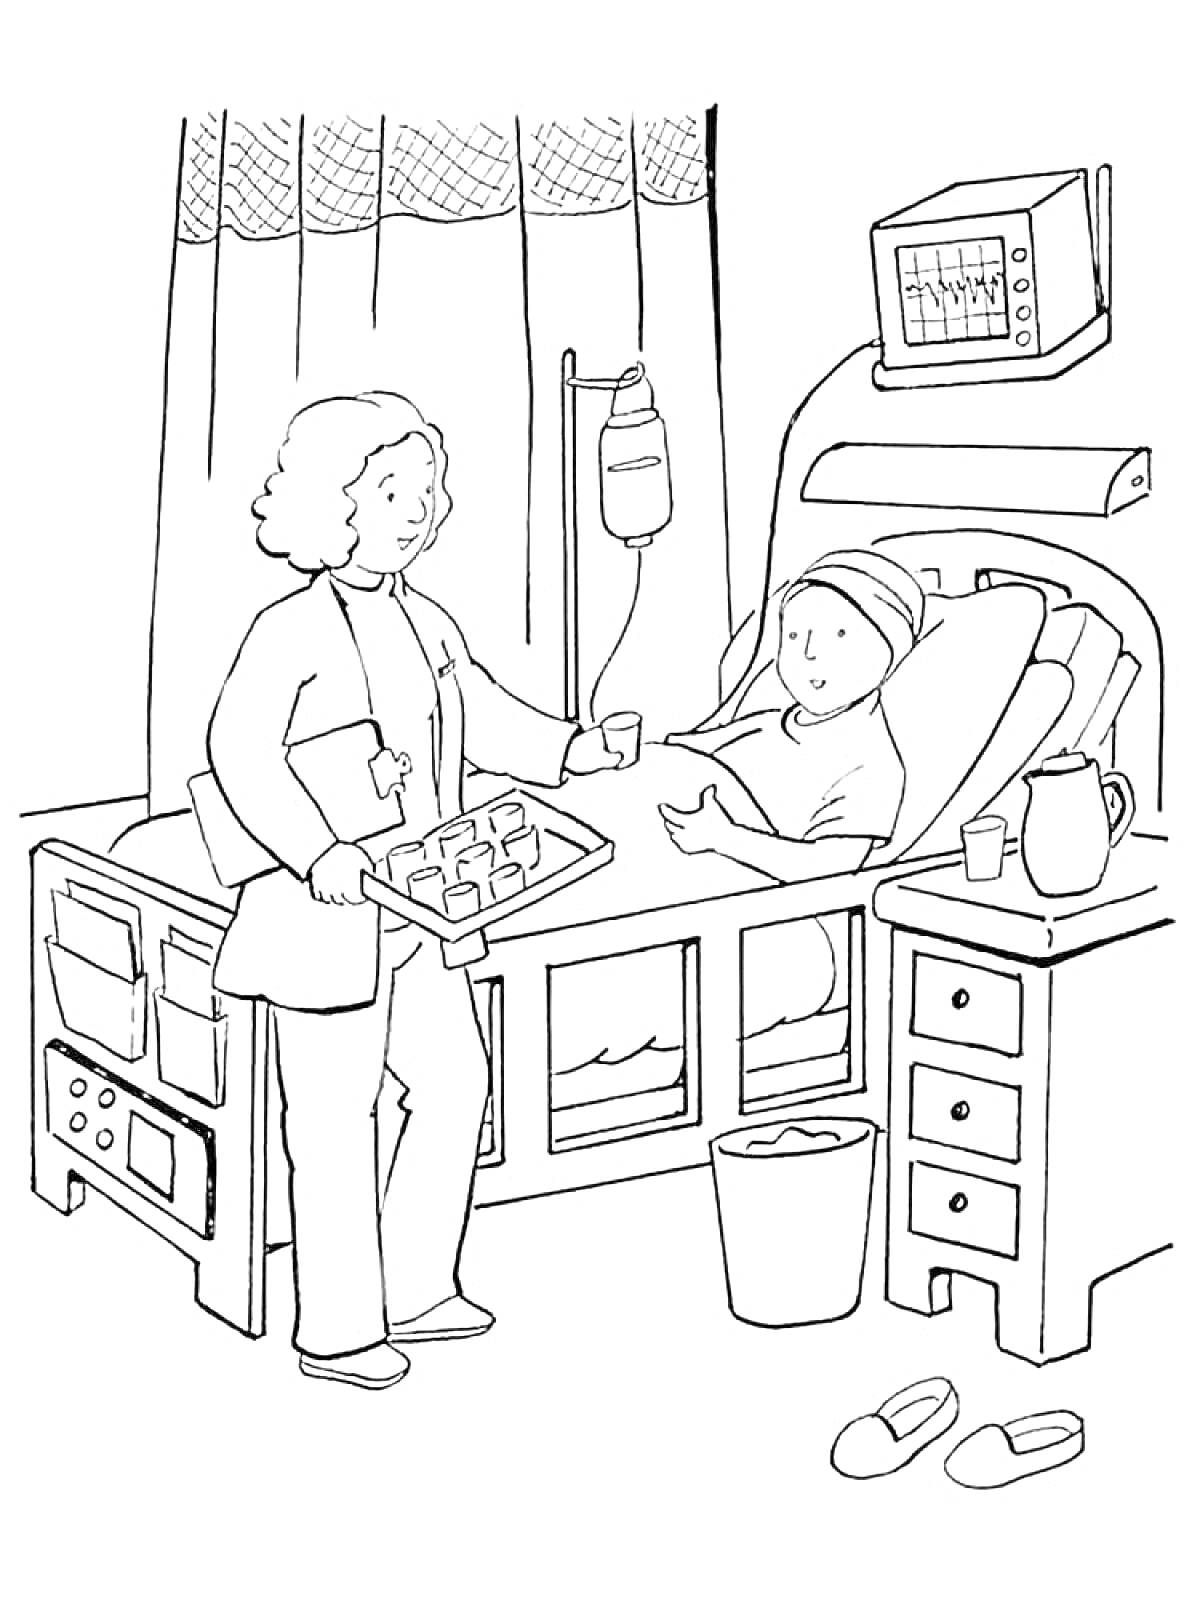 Раскраска Медсестра ухаживает за пациентом в больнице: койка, капельница, монитор, тумбочка, тапочки, ведро, кувшин и стакан